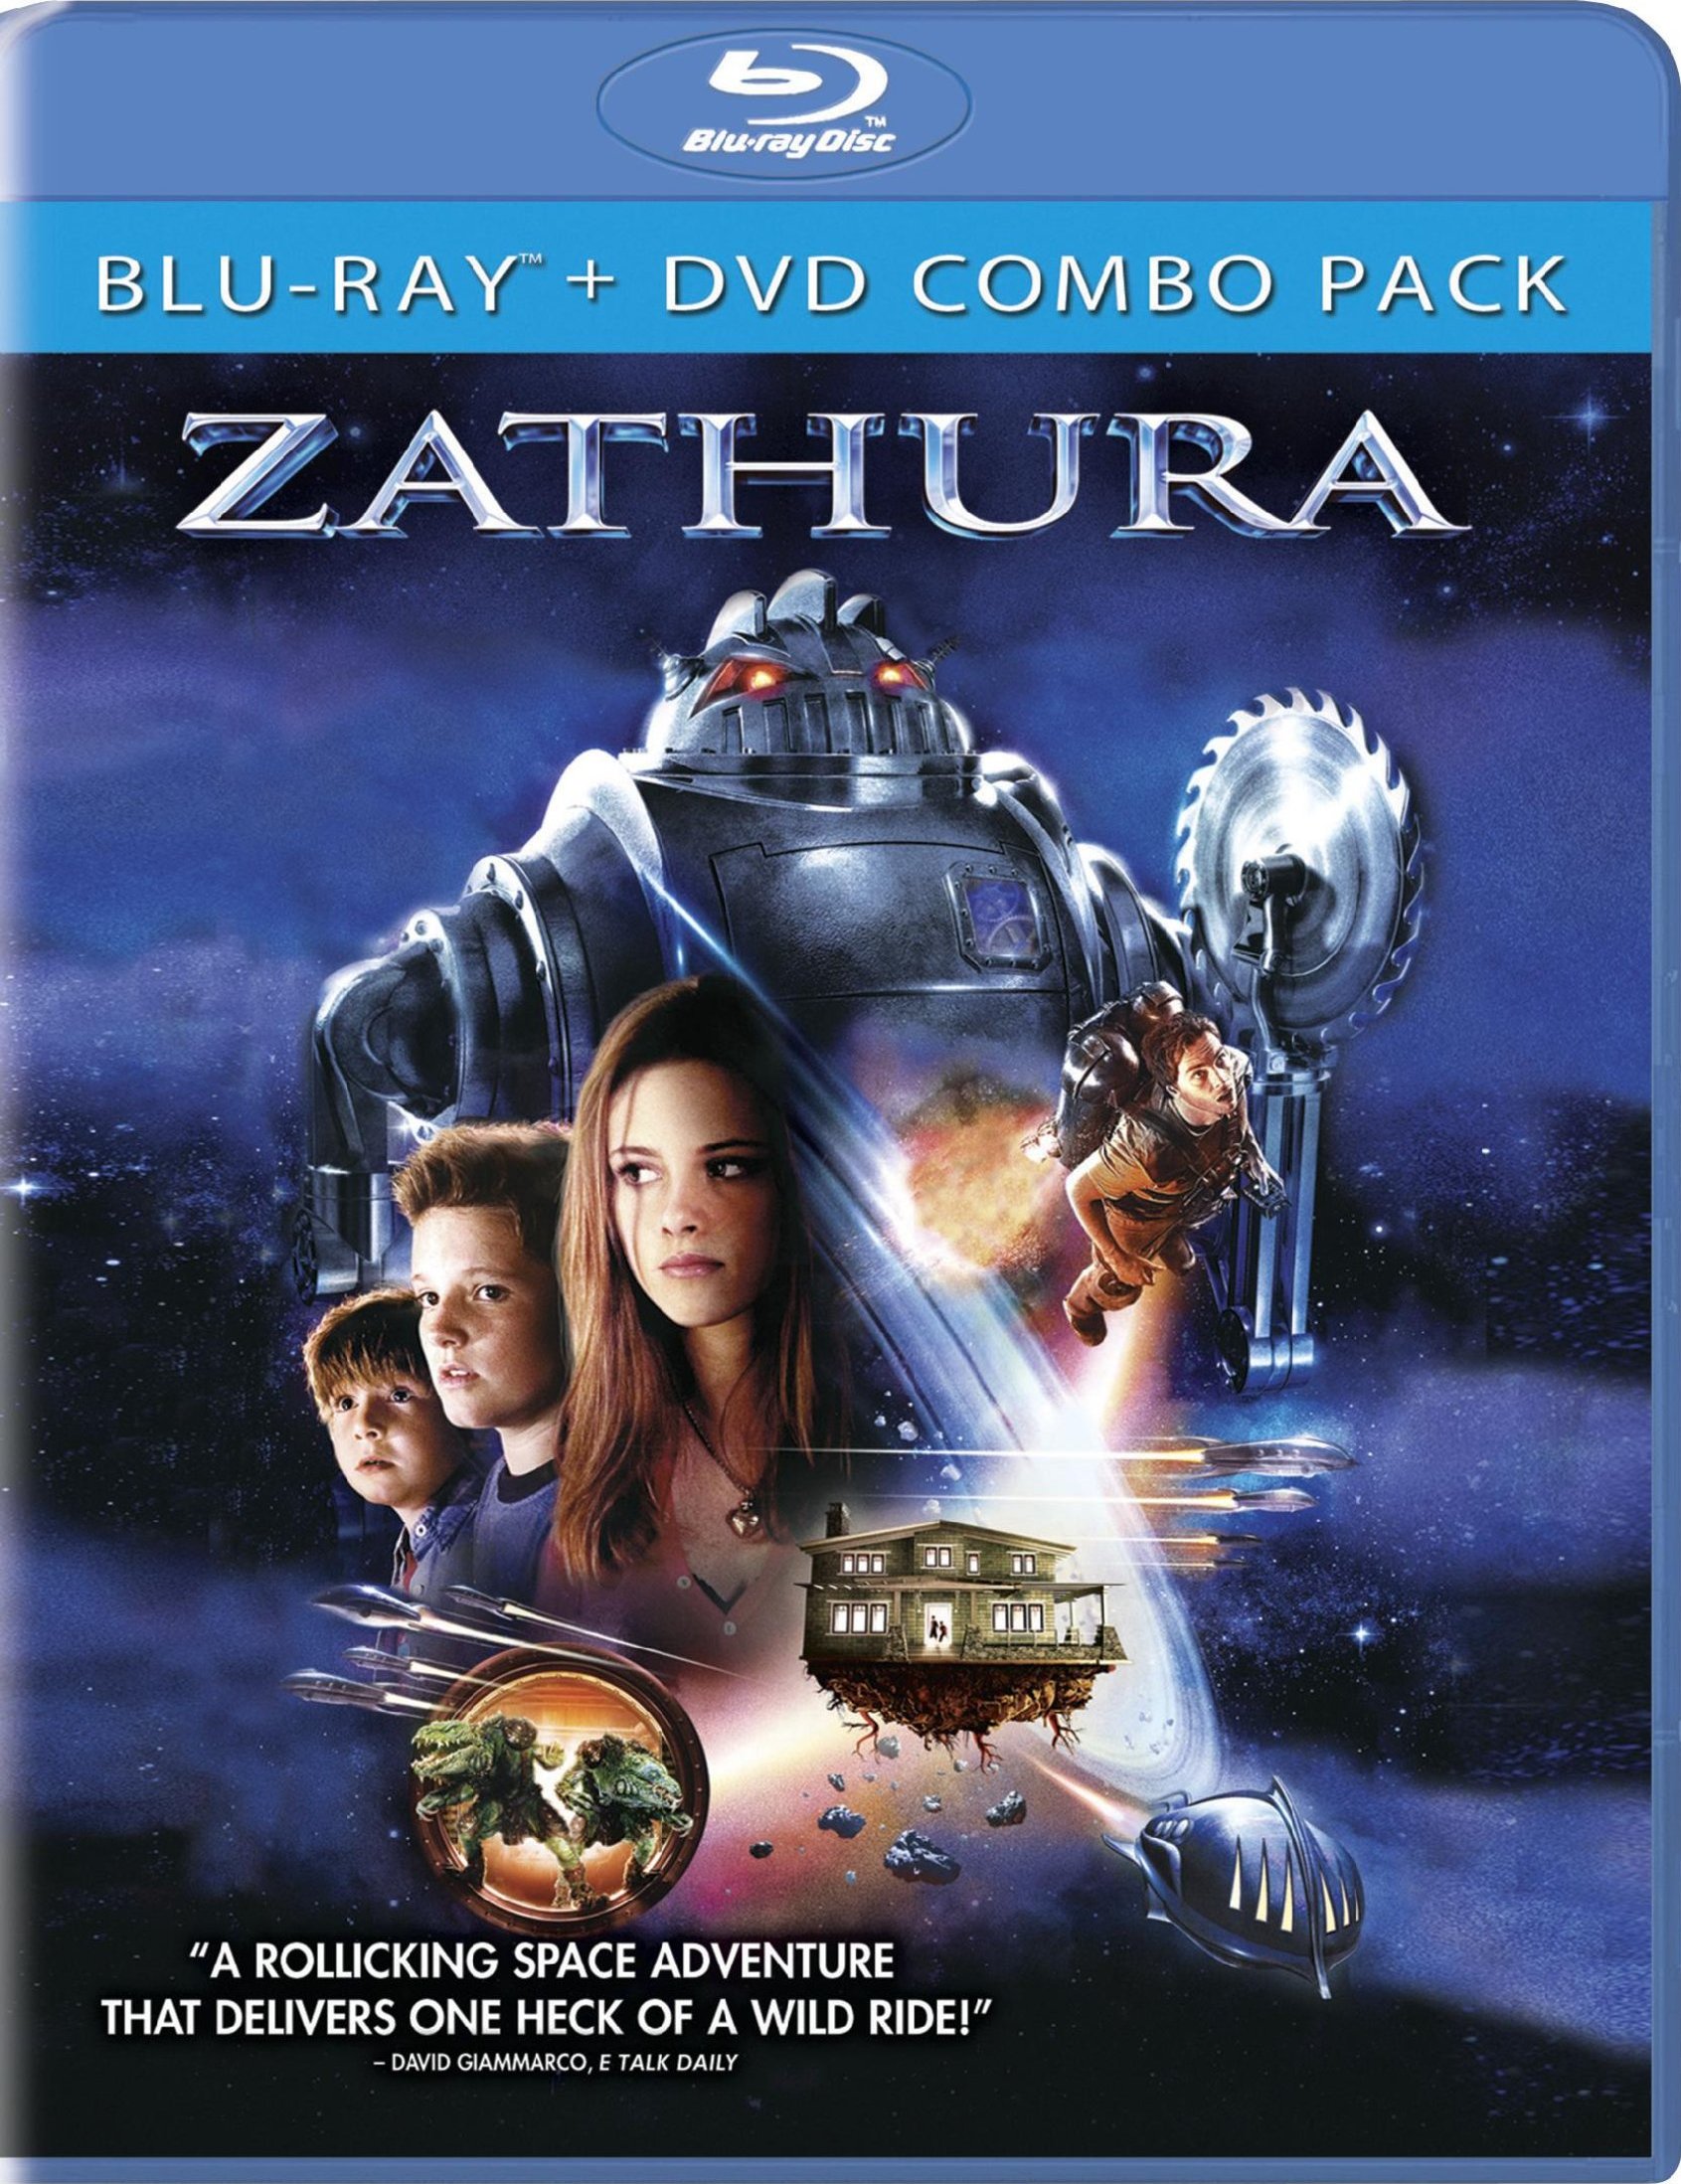 Zathura: A Space Adventure #2